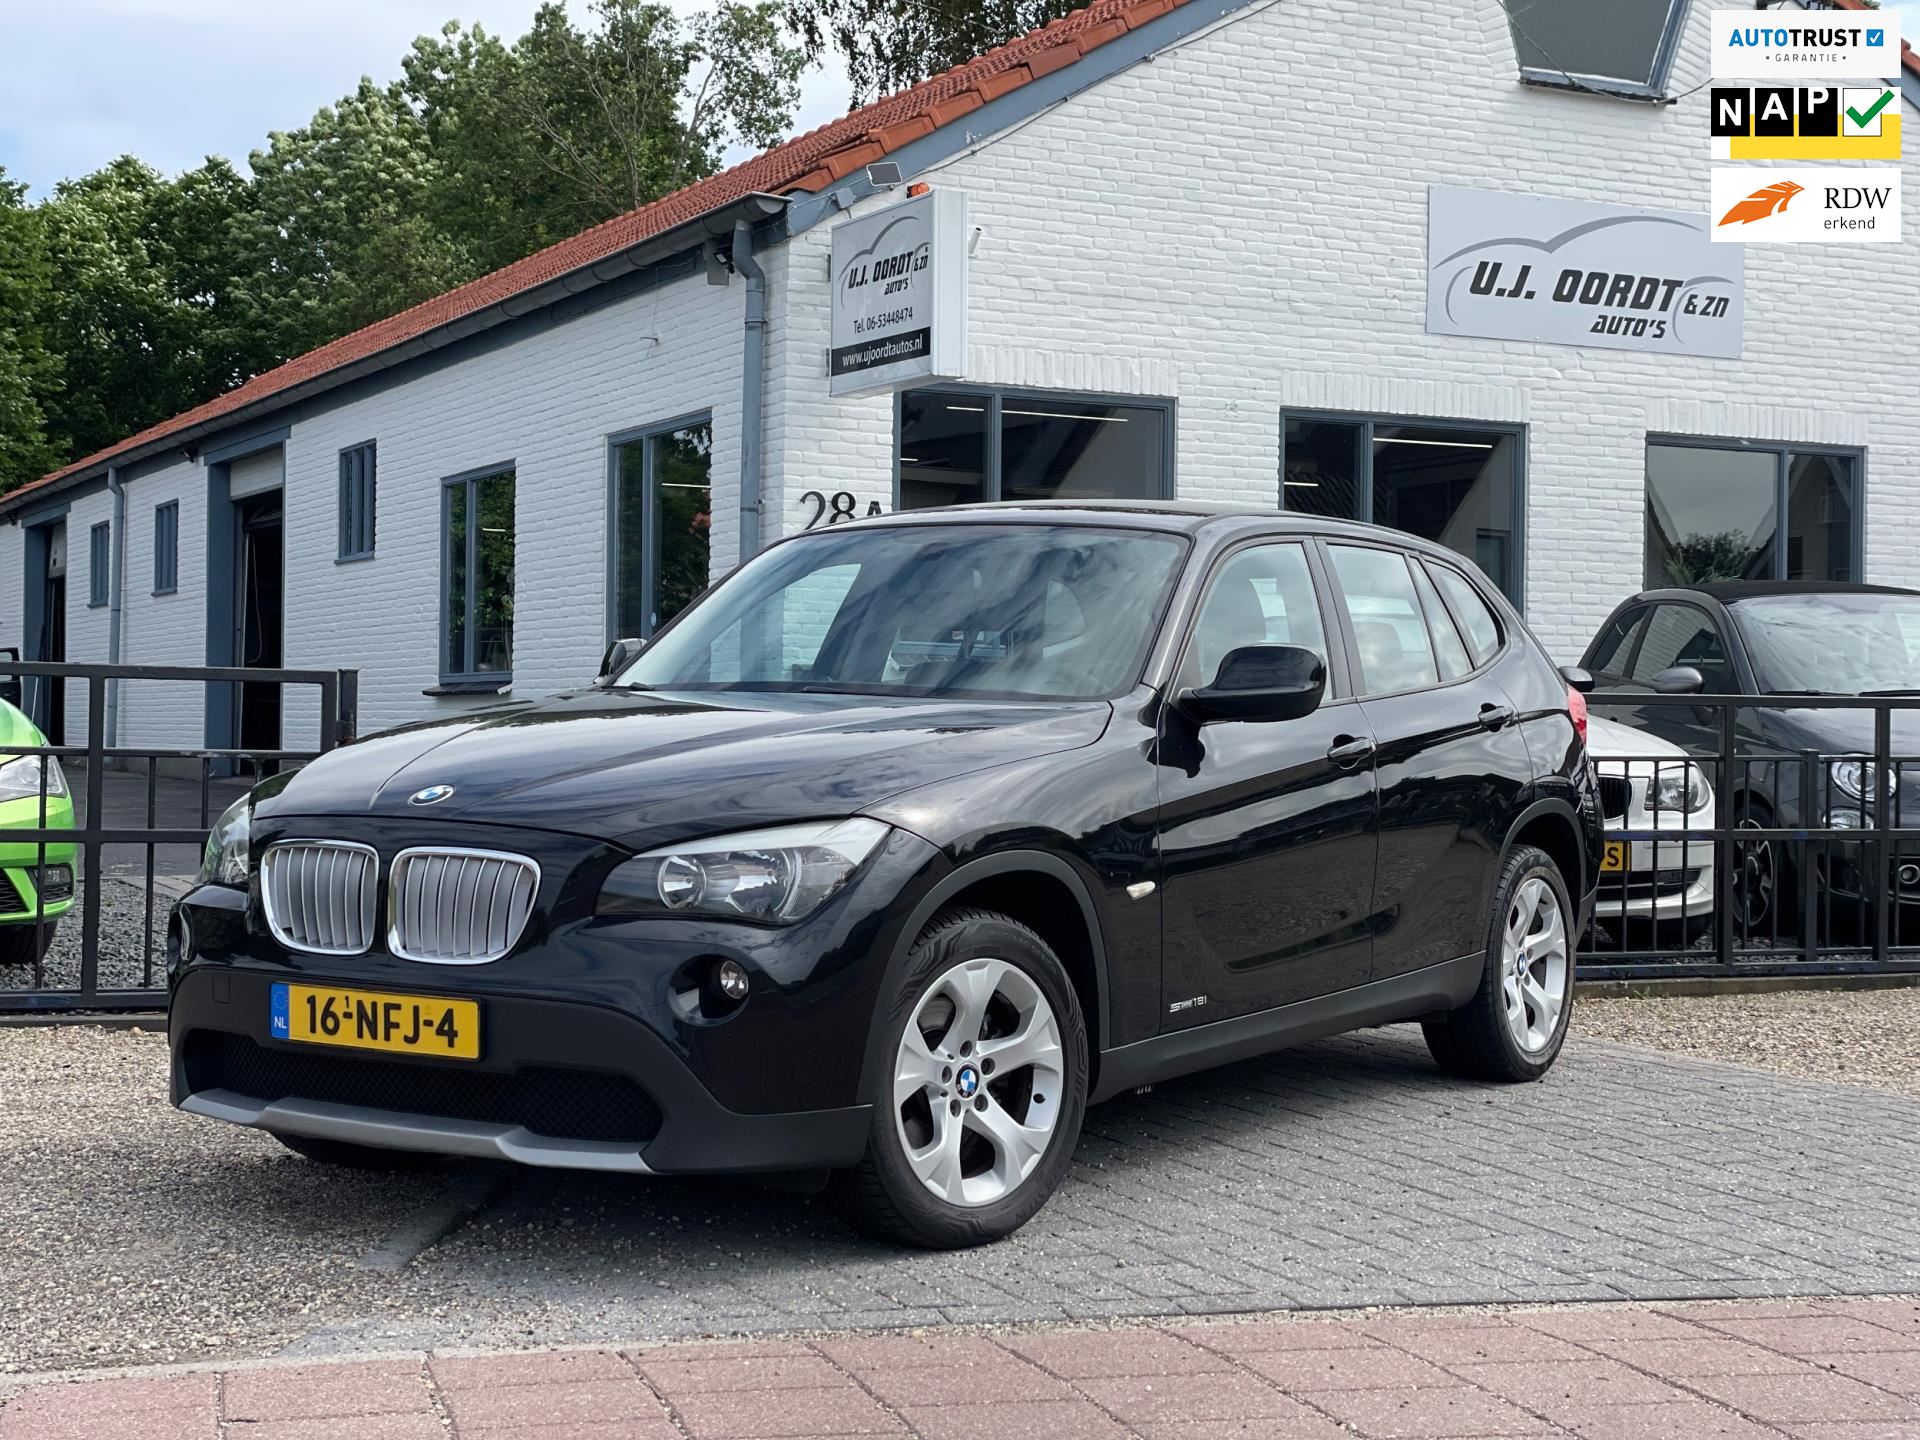 BMW X1 occasion - U.J. Oordt Auto's